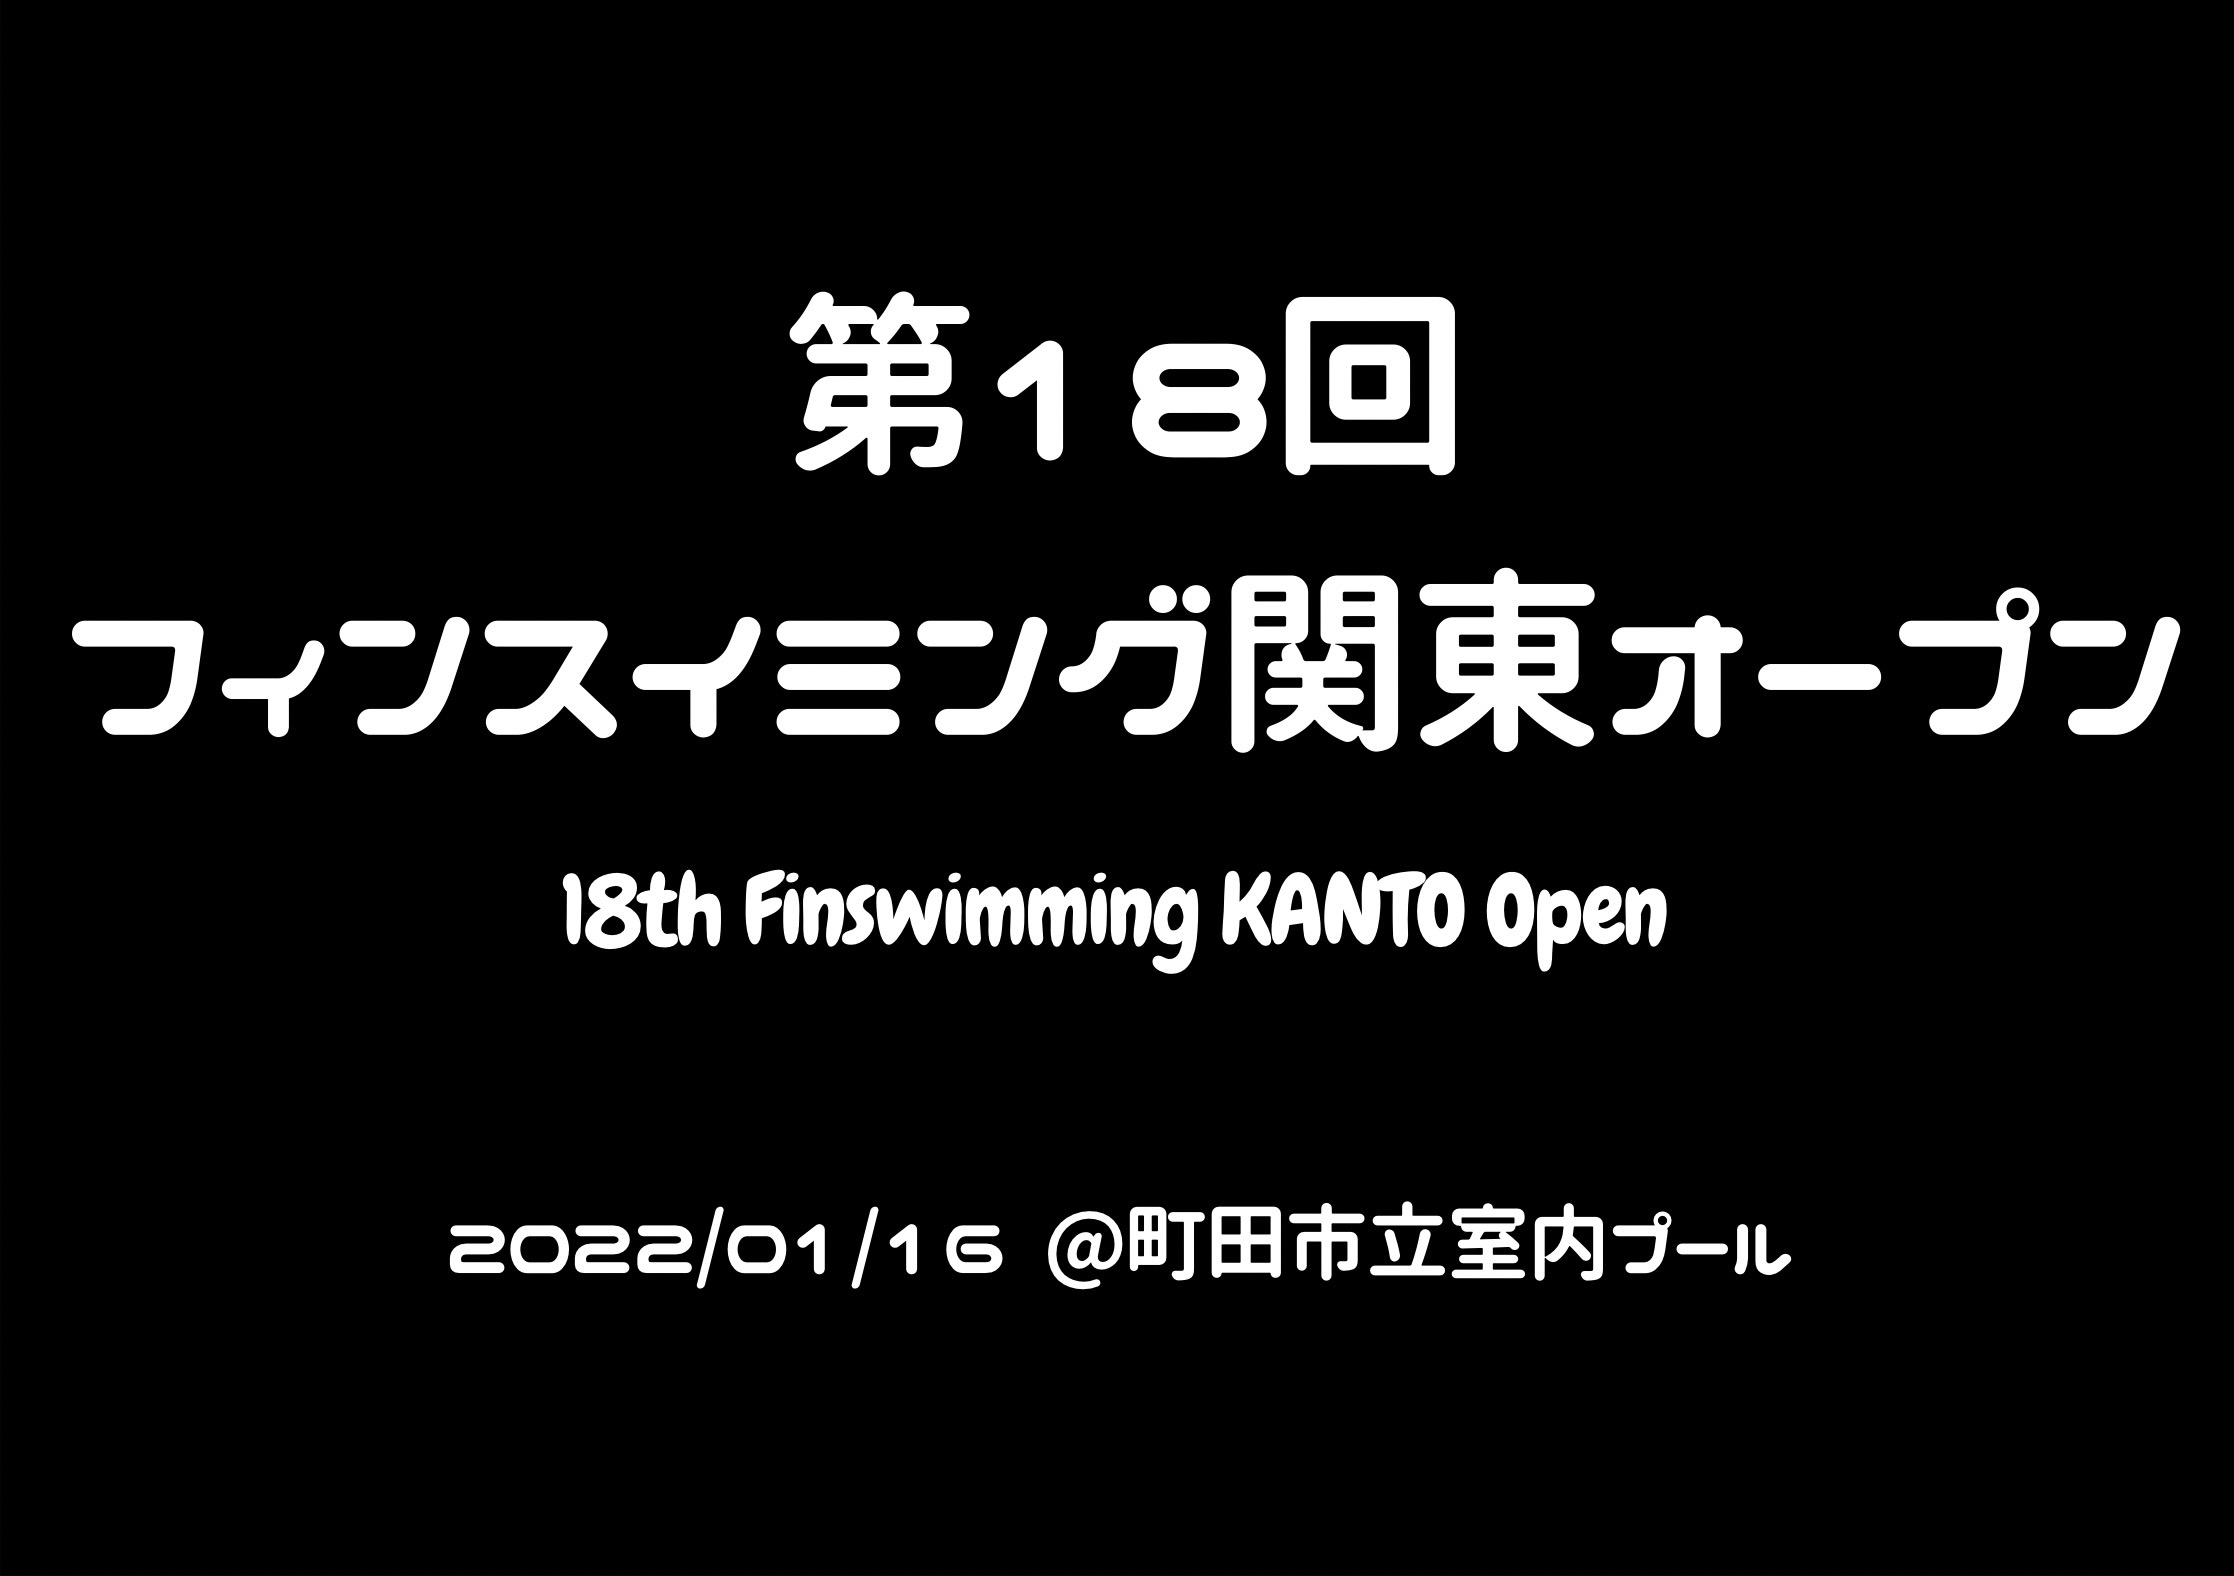 【大会情報】第18回フィンスイミング関東オープン大会